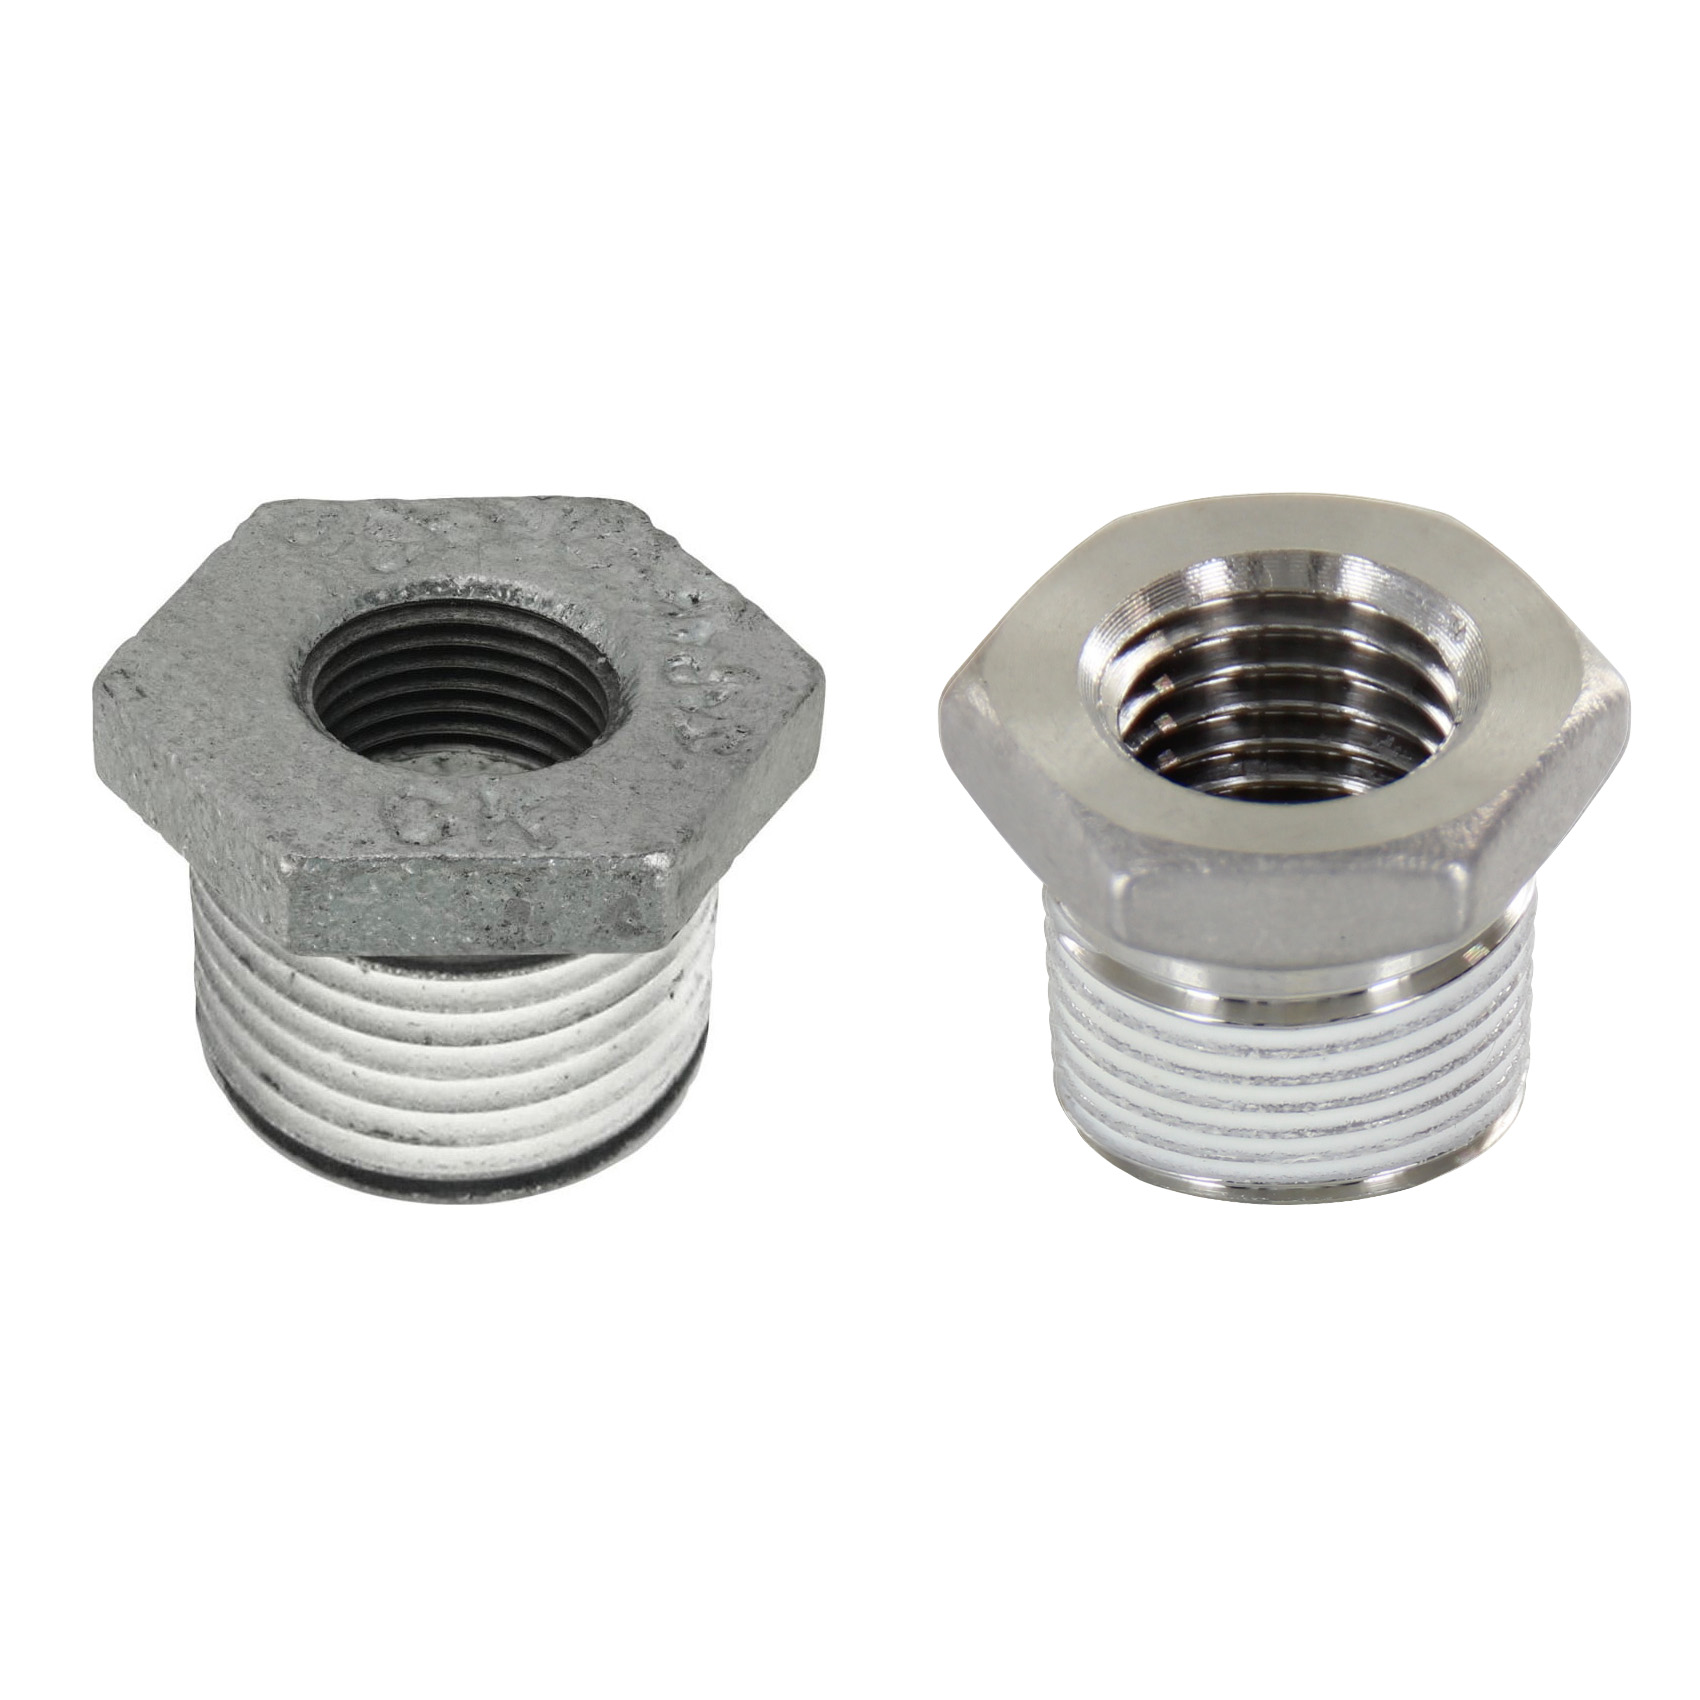 Low Pressure Screw Fittings - Thread Coated Type - Steel Pipe Fittings - Bushings (SGCPB23) 